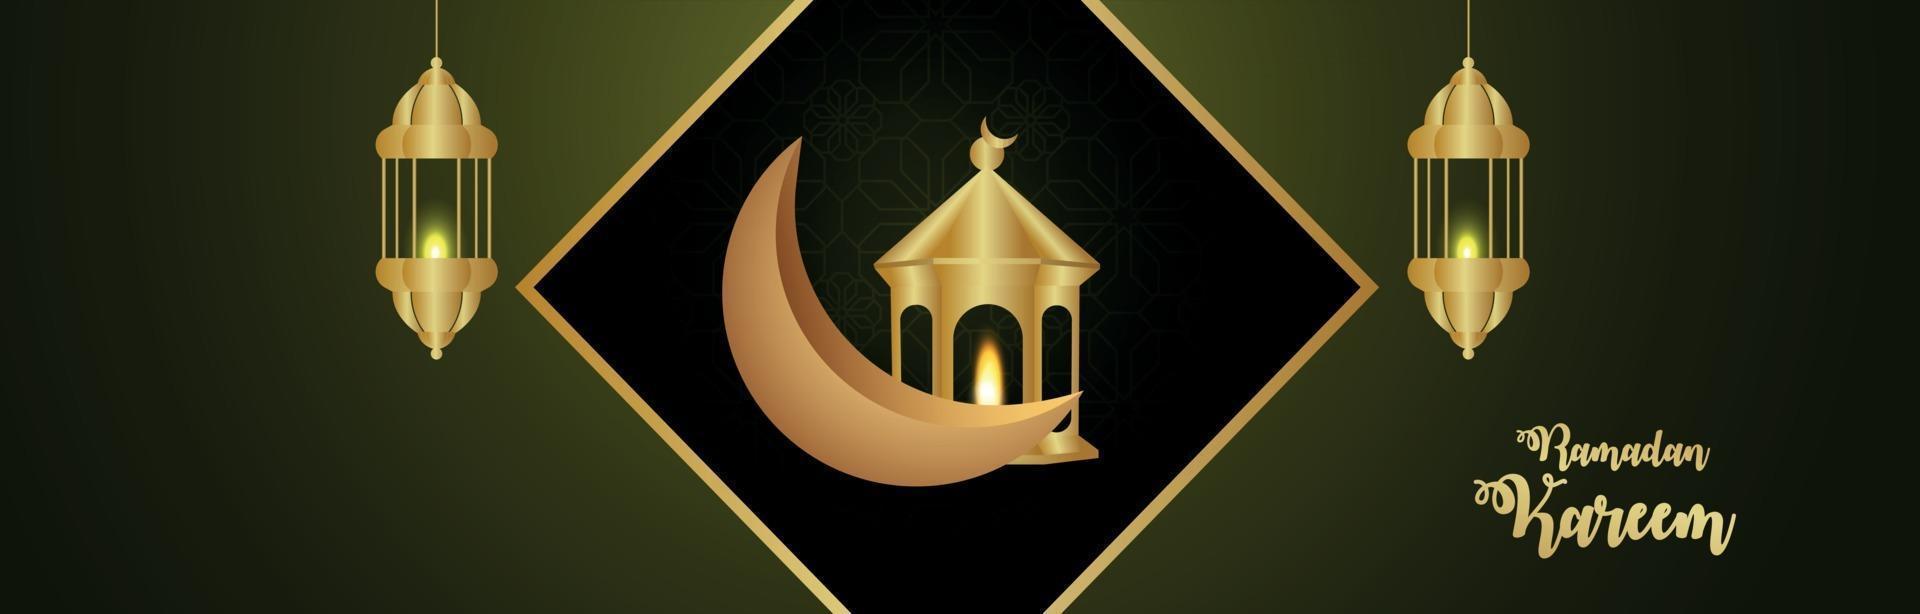 banner ou cabeçalho do festival islâmico ramadan kareem com lanterna árabe dourada e lua vetor